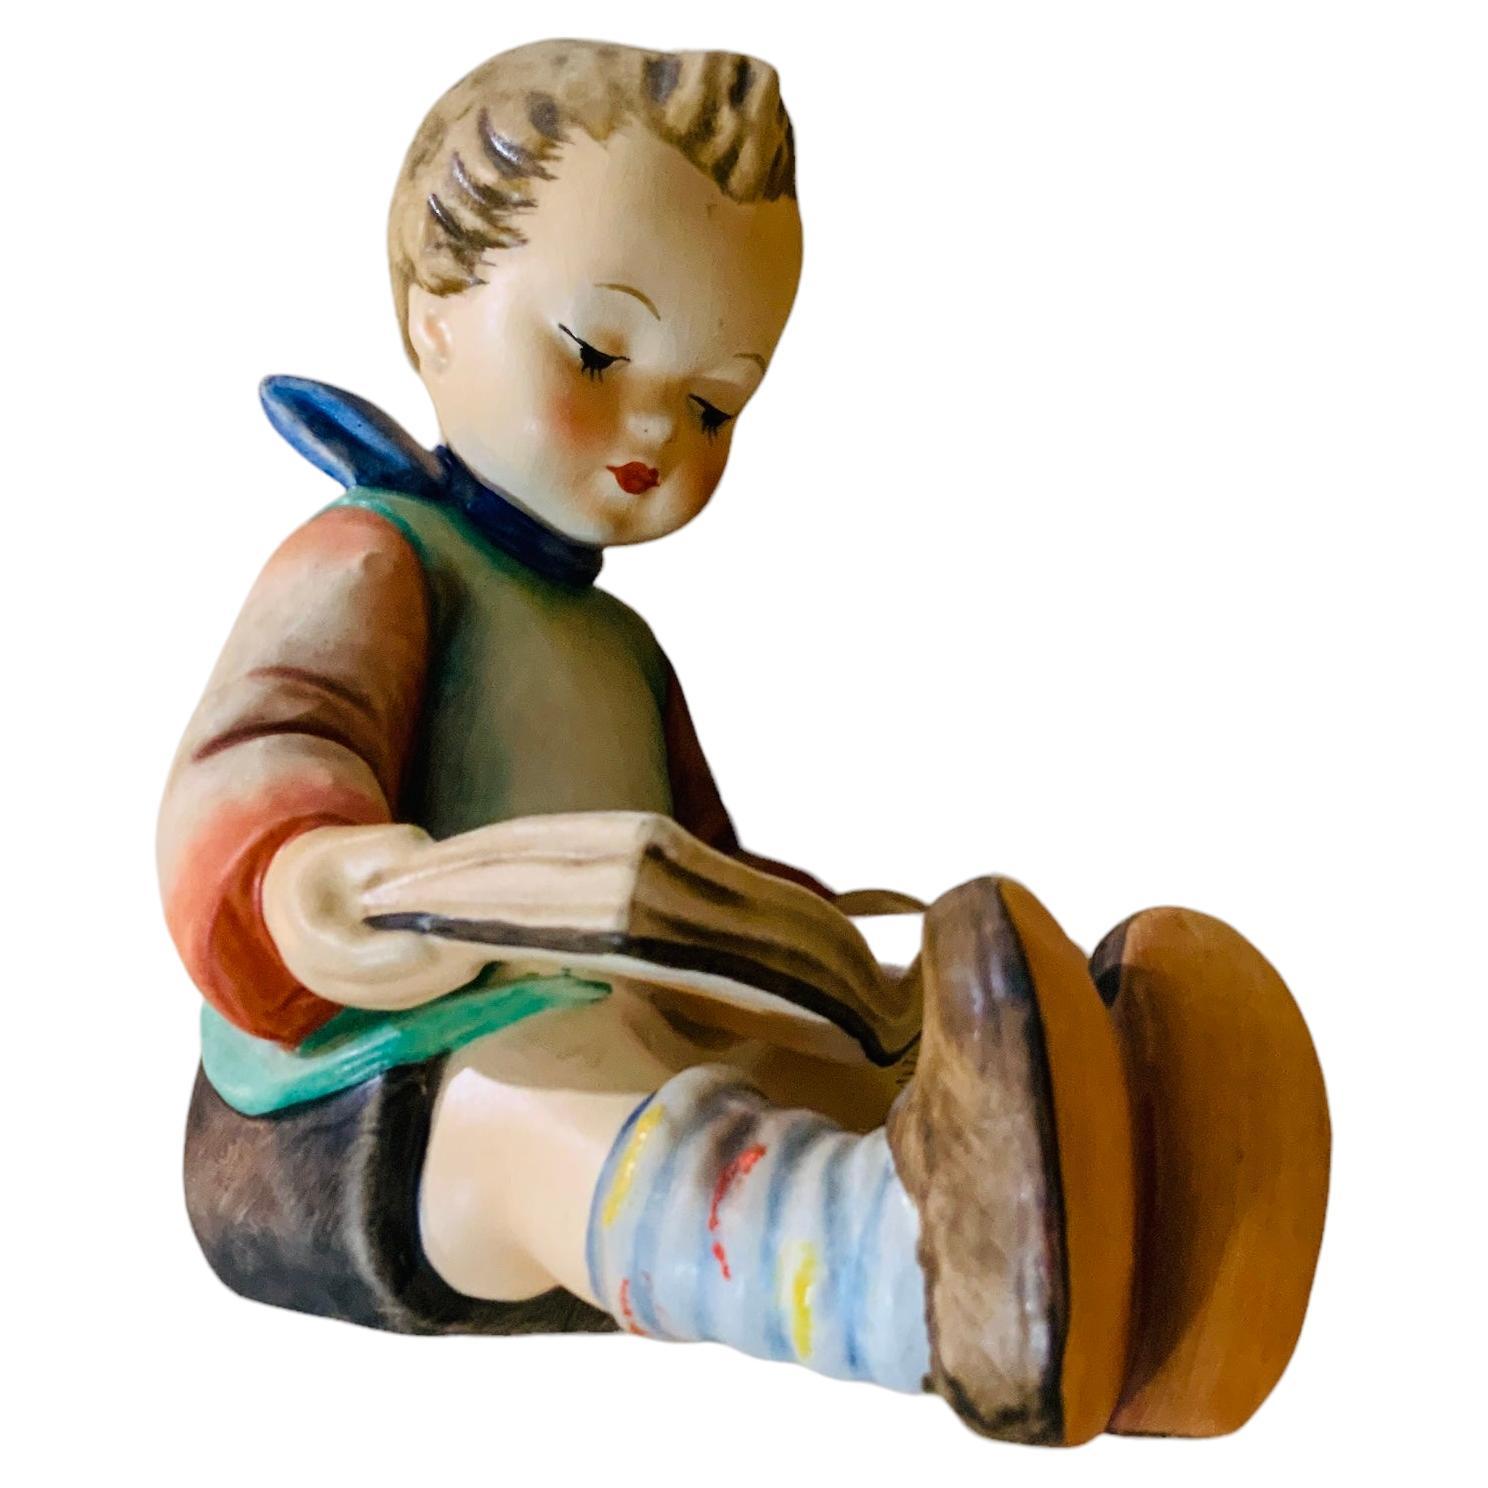 Goebel Company Hummel Porcelain Figurine “Reading Boy” For Sale